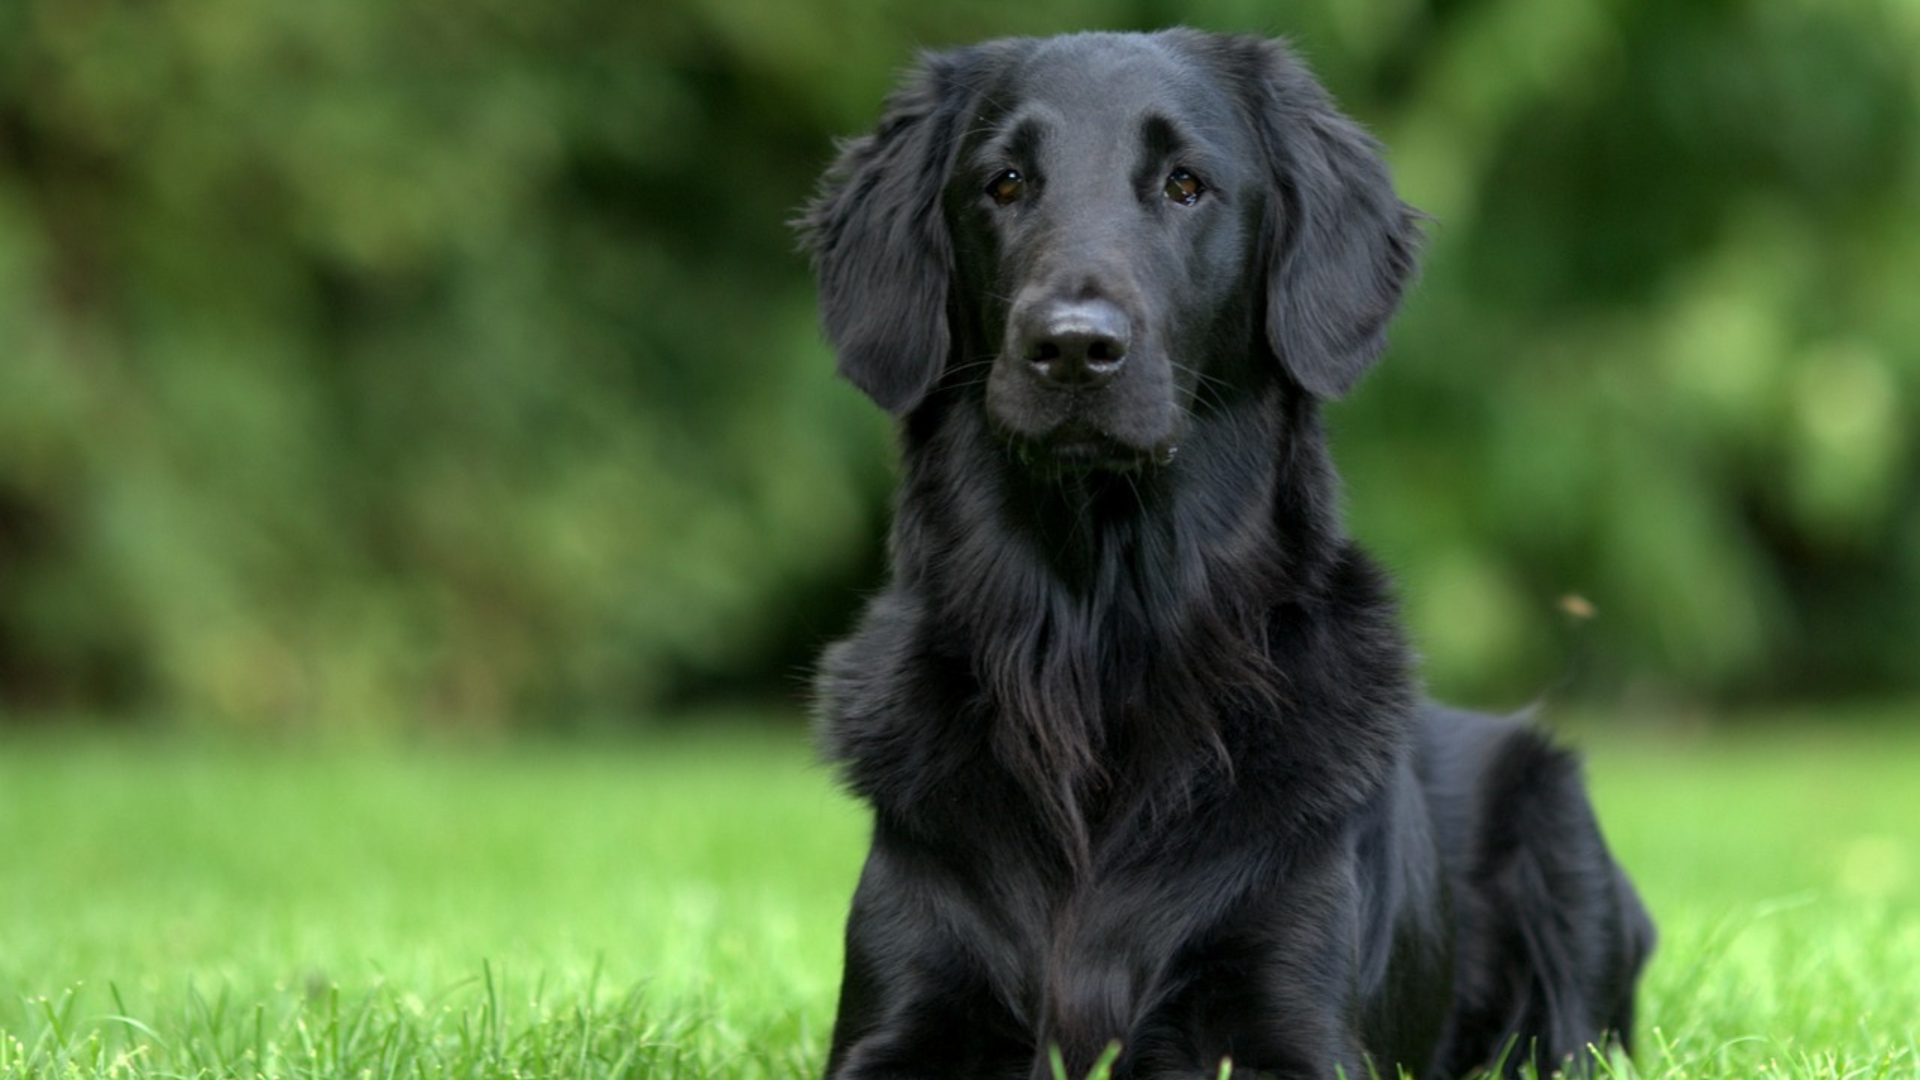 Best Big Black Dog Breeds